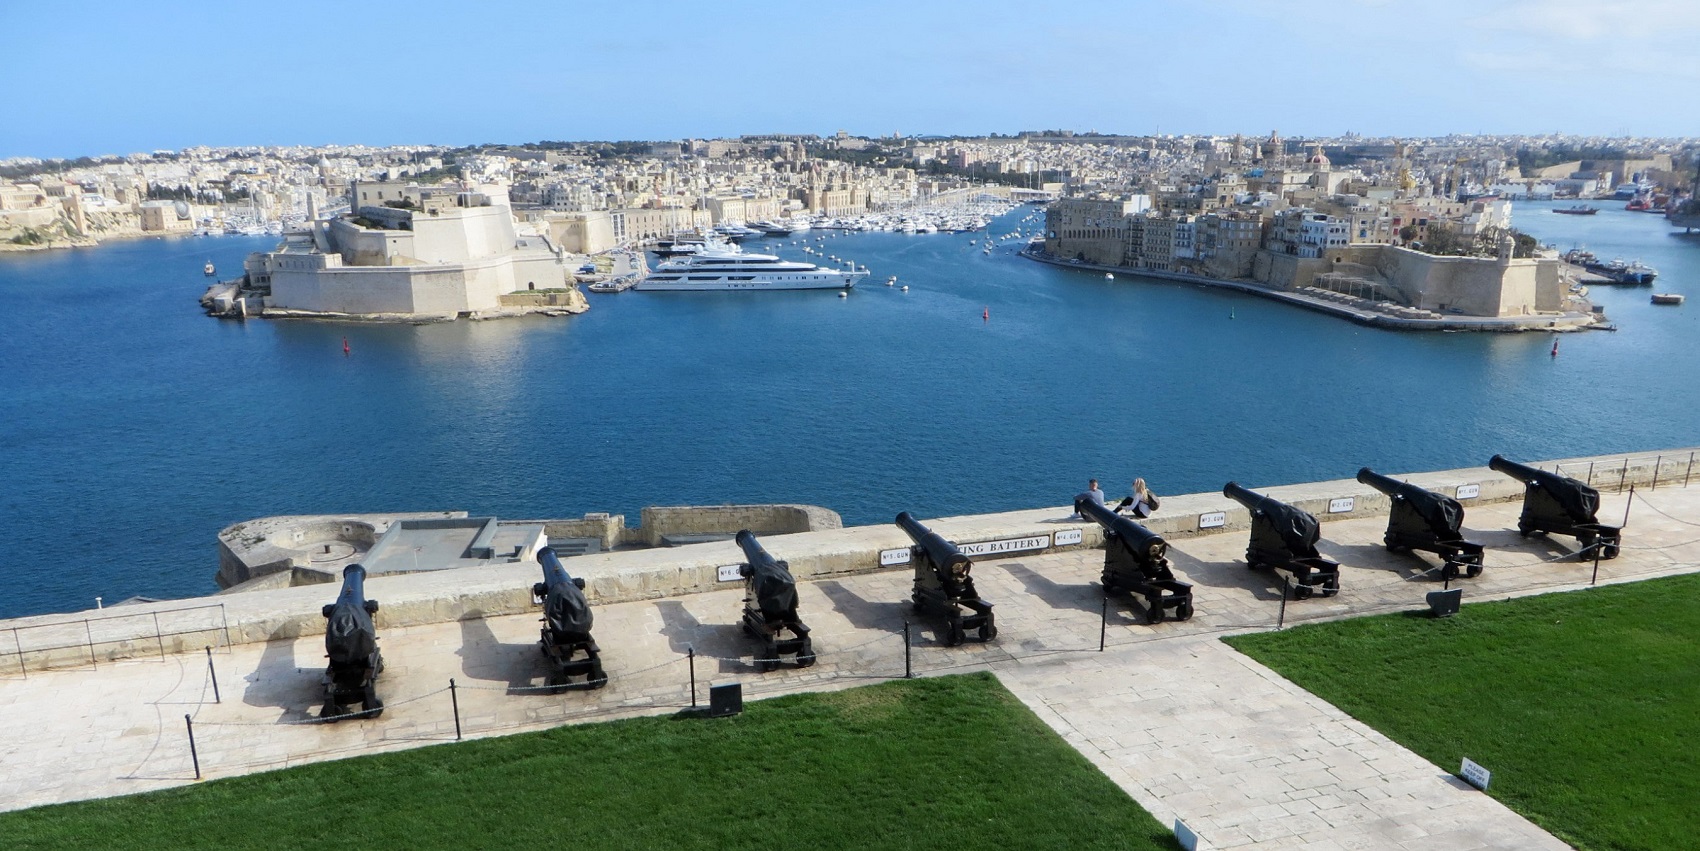 Malta Valletta Information & Transport